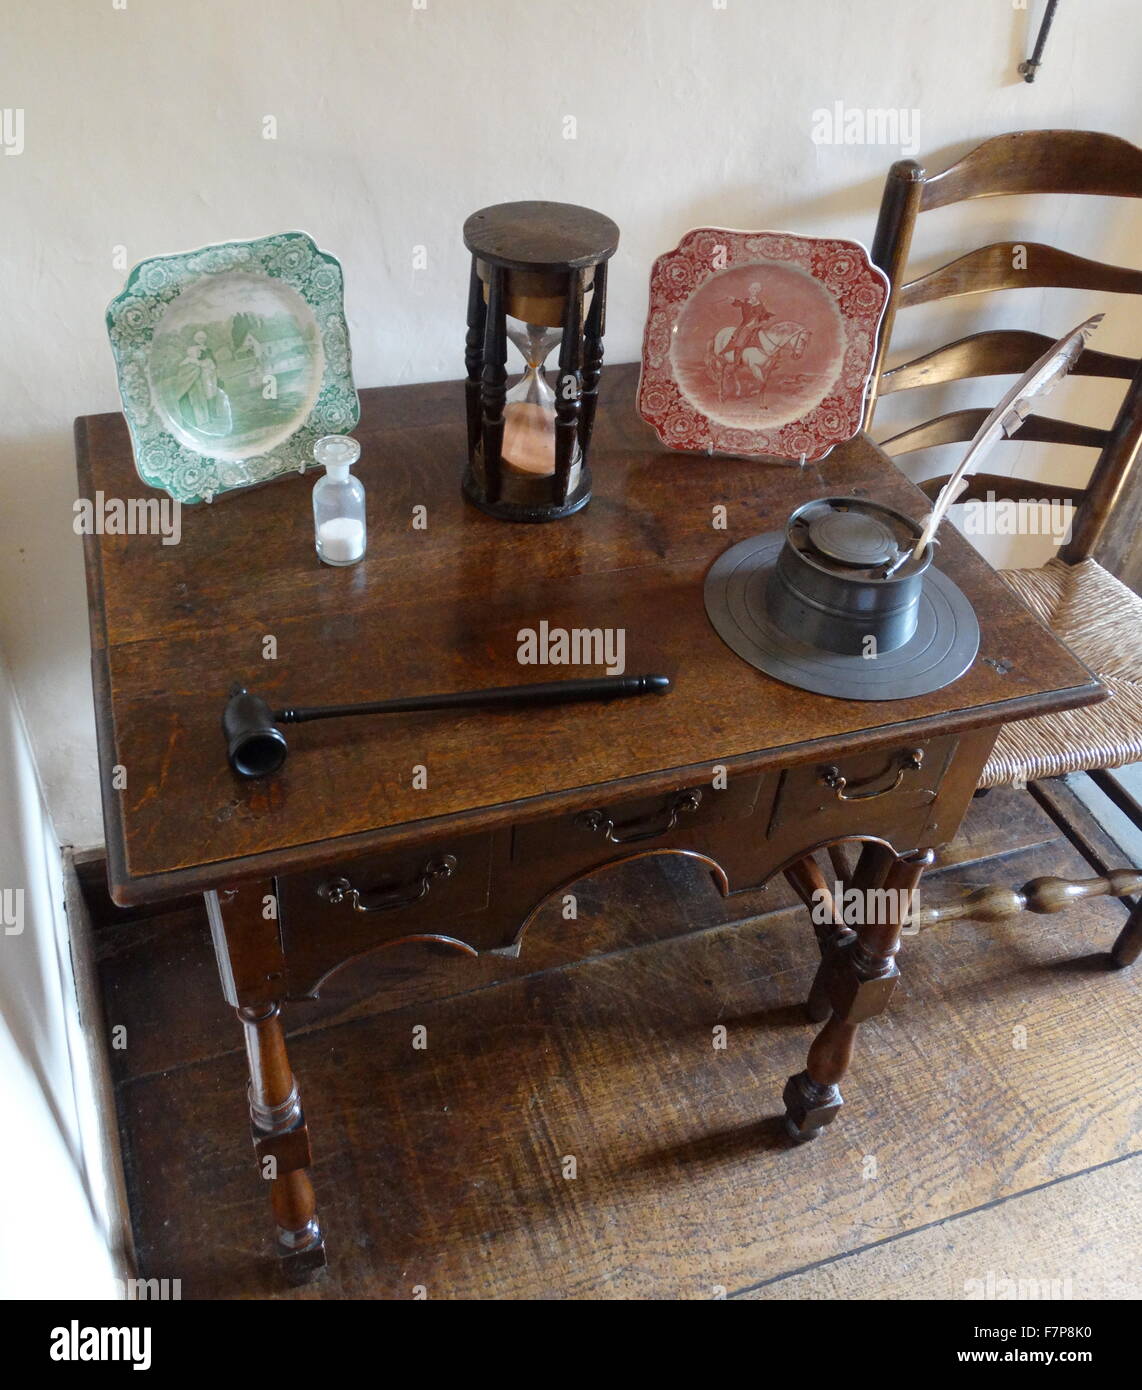 Côté anglais du 17ème siècle avec la table avec de l'encre à la plume, au stand Manoir Sulgrave, Angleterre, maison ancestrale de George Washington. 2016 Banque D'Images